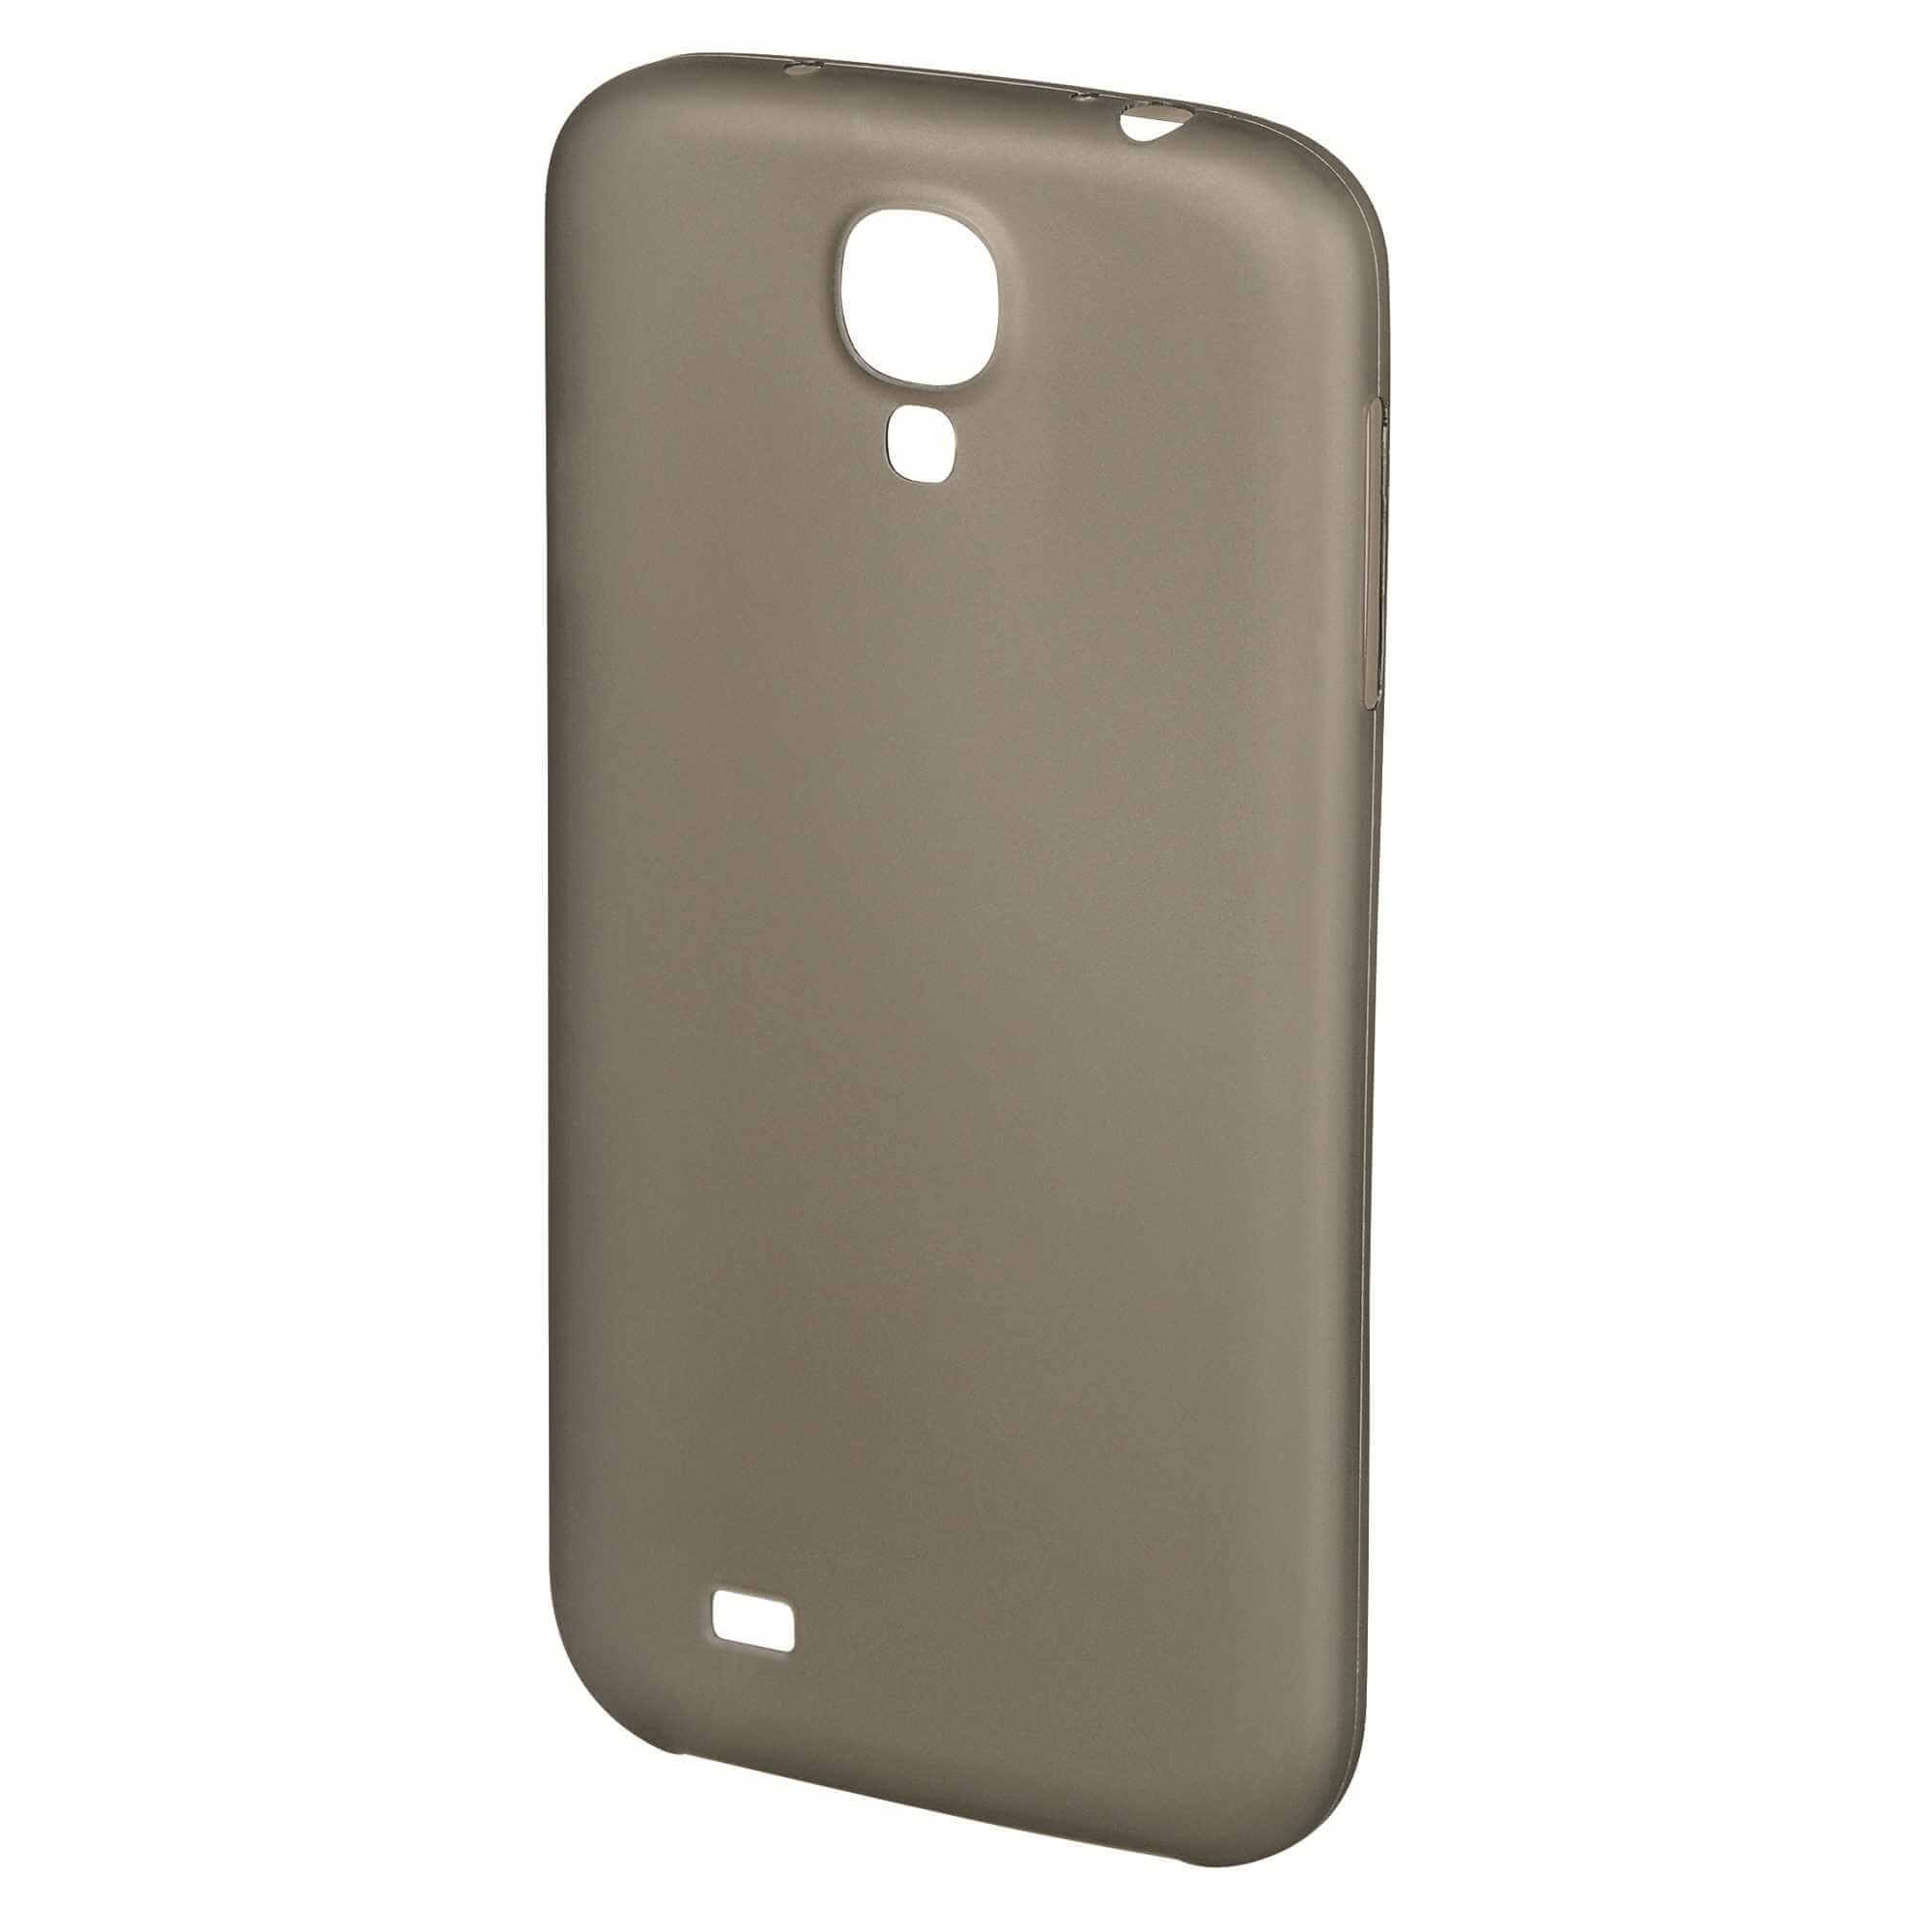  Carcasa de protectie Hama slim 124614 pentru Galaxy S4 Mini, Gri 